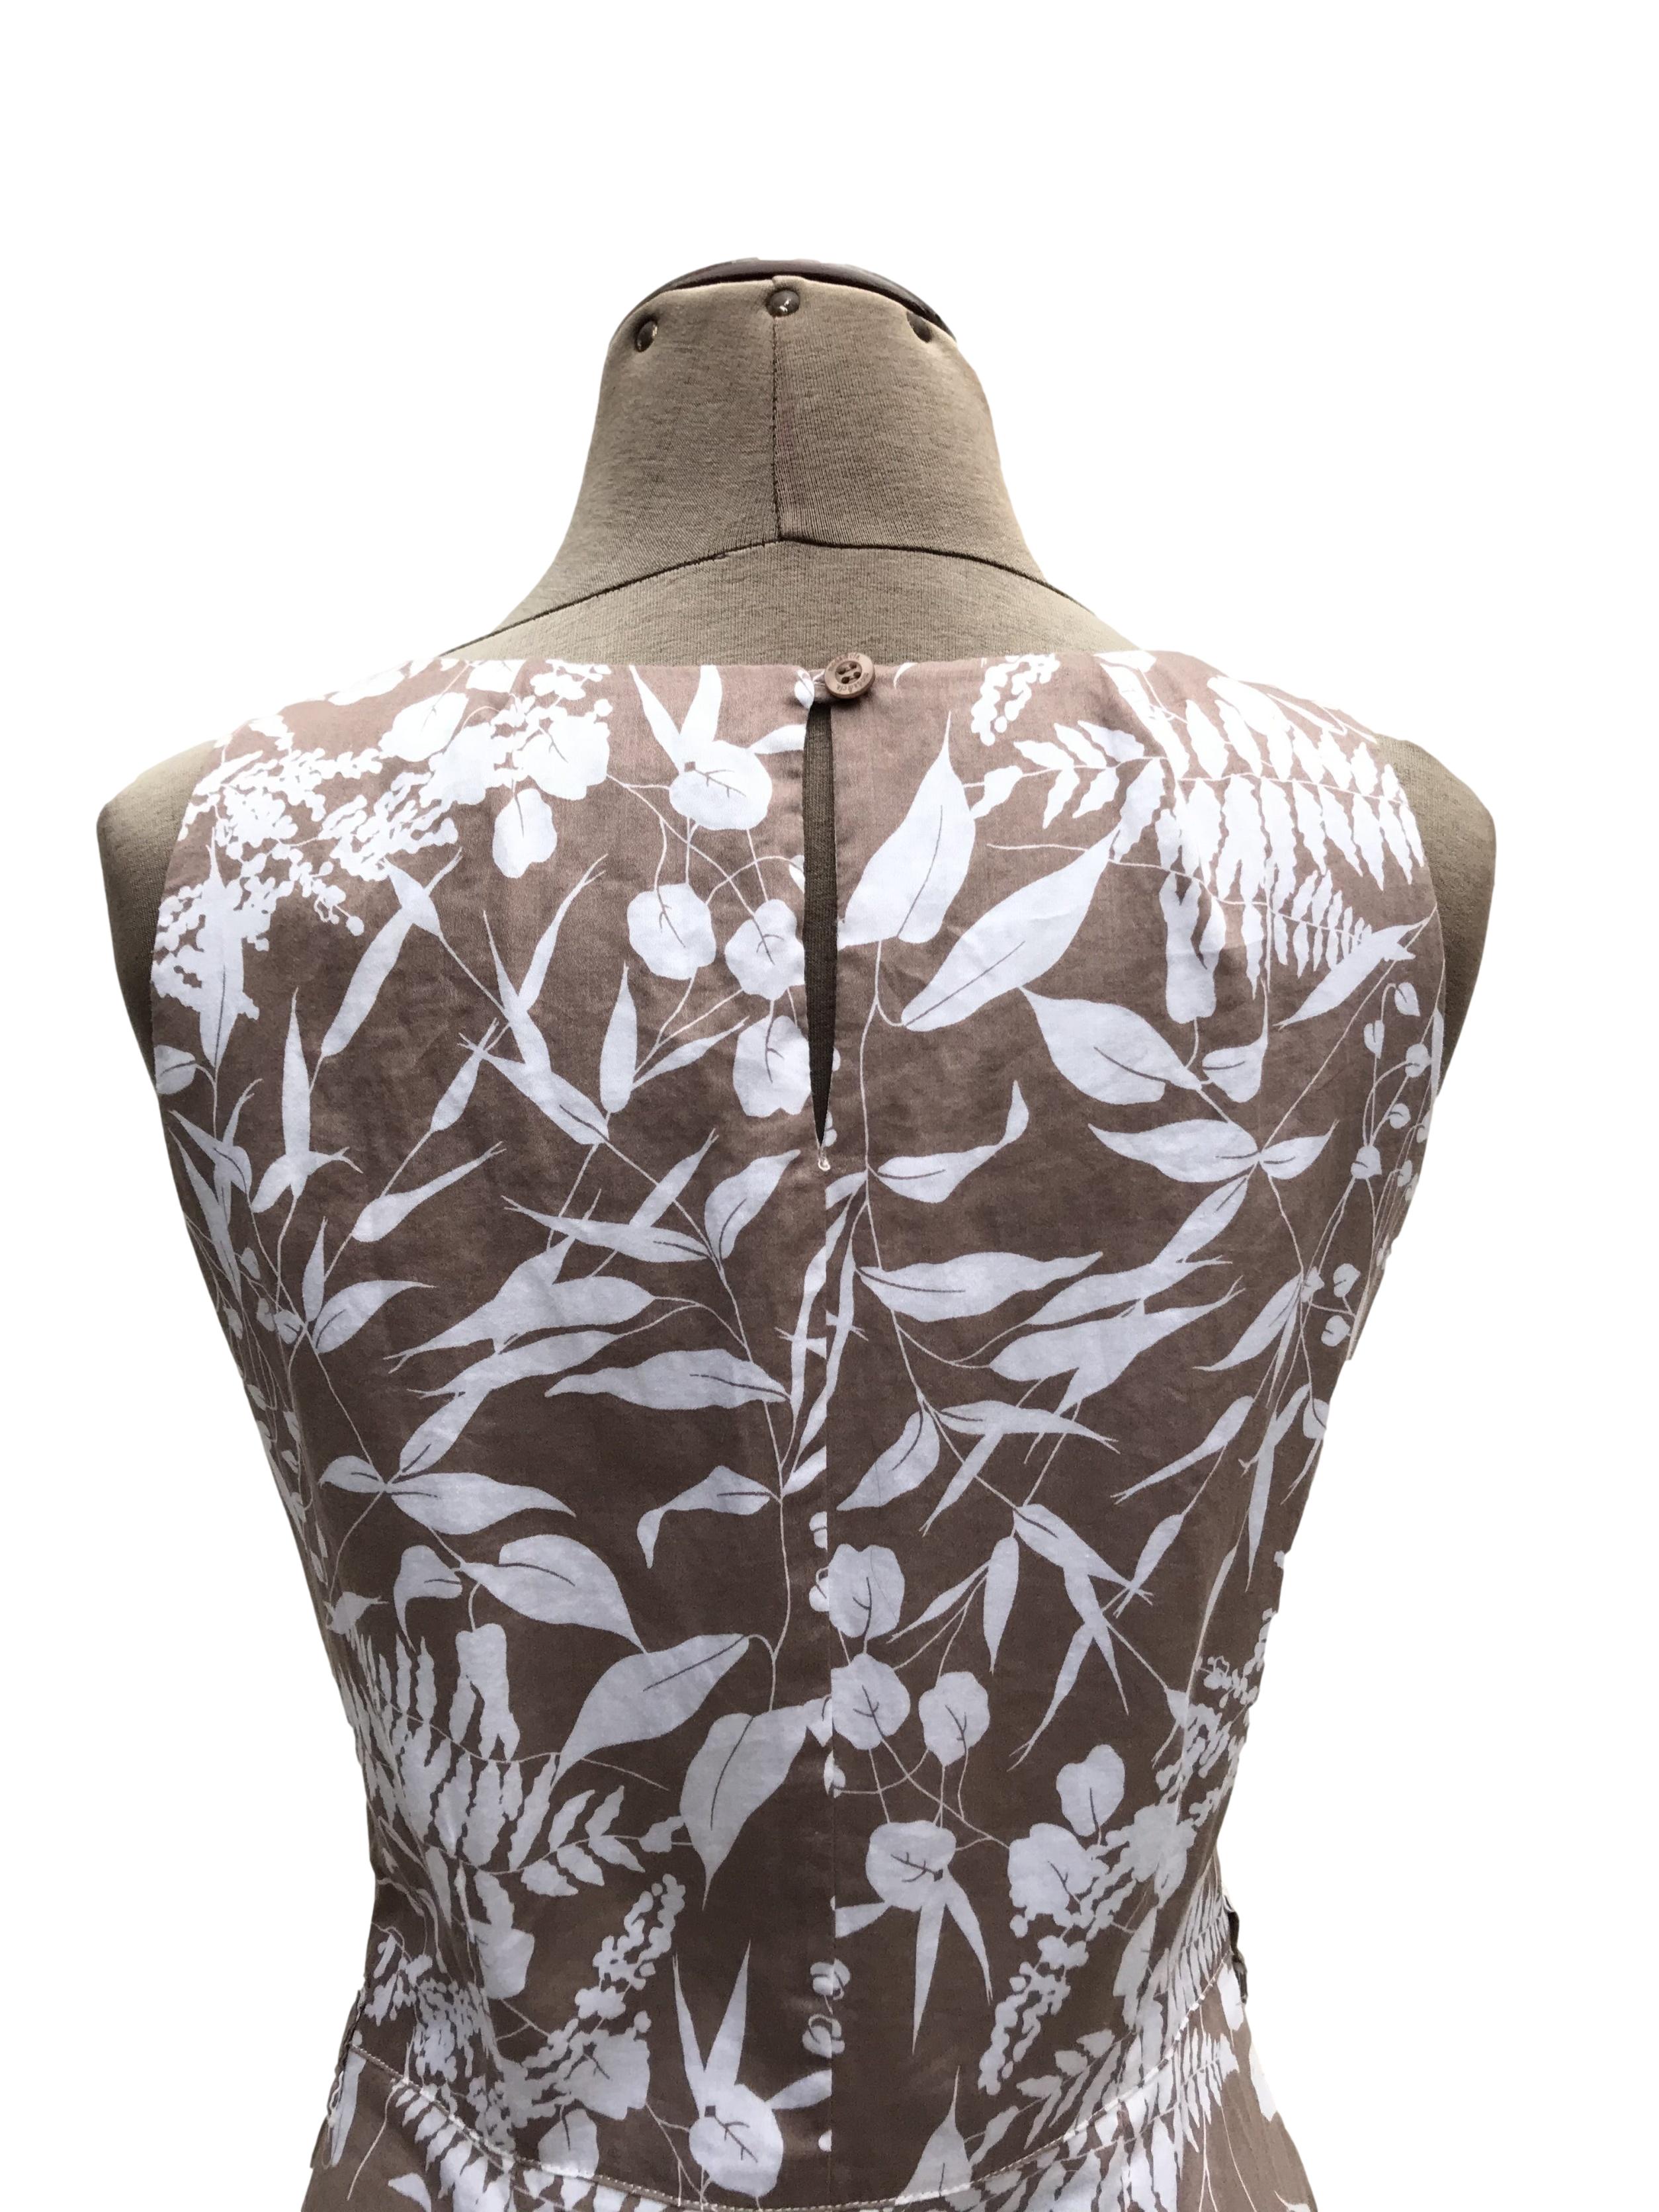 Vestido Moda&cia marrón claro con estampado de flores blancas, 97% algodón, forrado en el torso, botón posterior en el cuello, cierre lateral y bolsillos. Largo 91cm. Precio original S/ 250